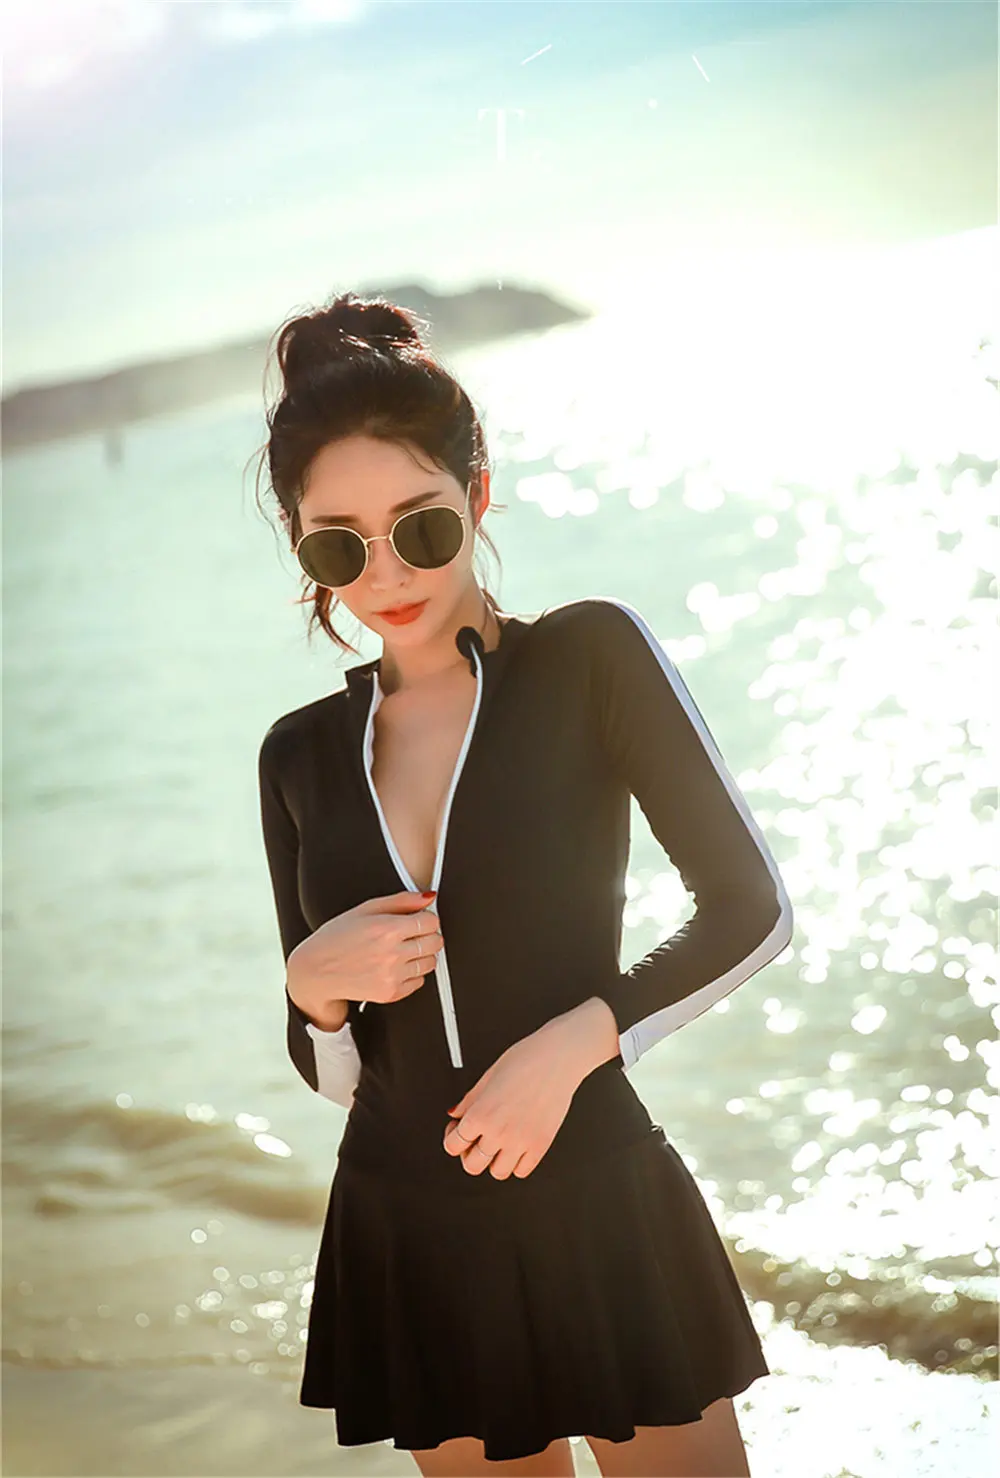 Skirted rhguard женский длинный рукав цельный купальный костюм плотная одежда для купания УФ Защита сёрфинга одежда молния Дайвинг рубашка черный коврик